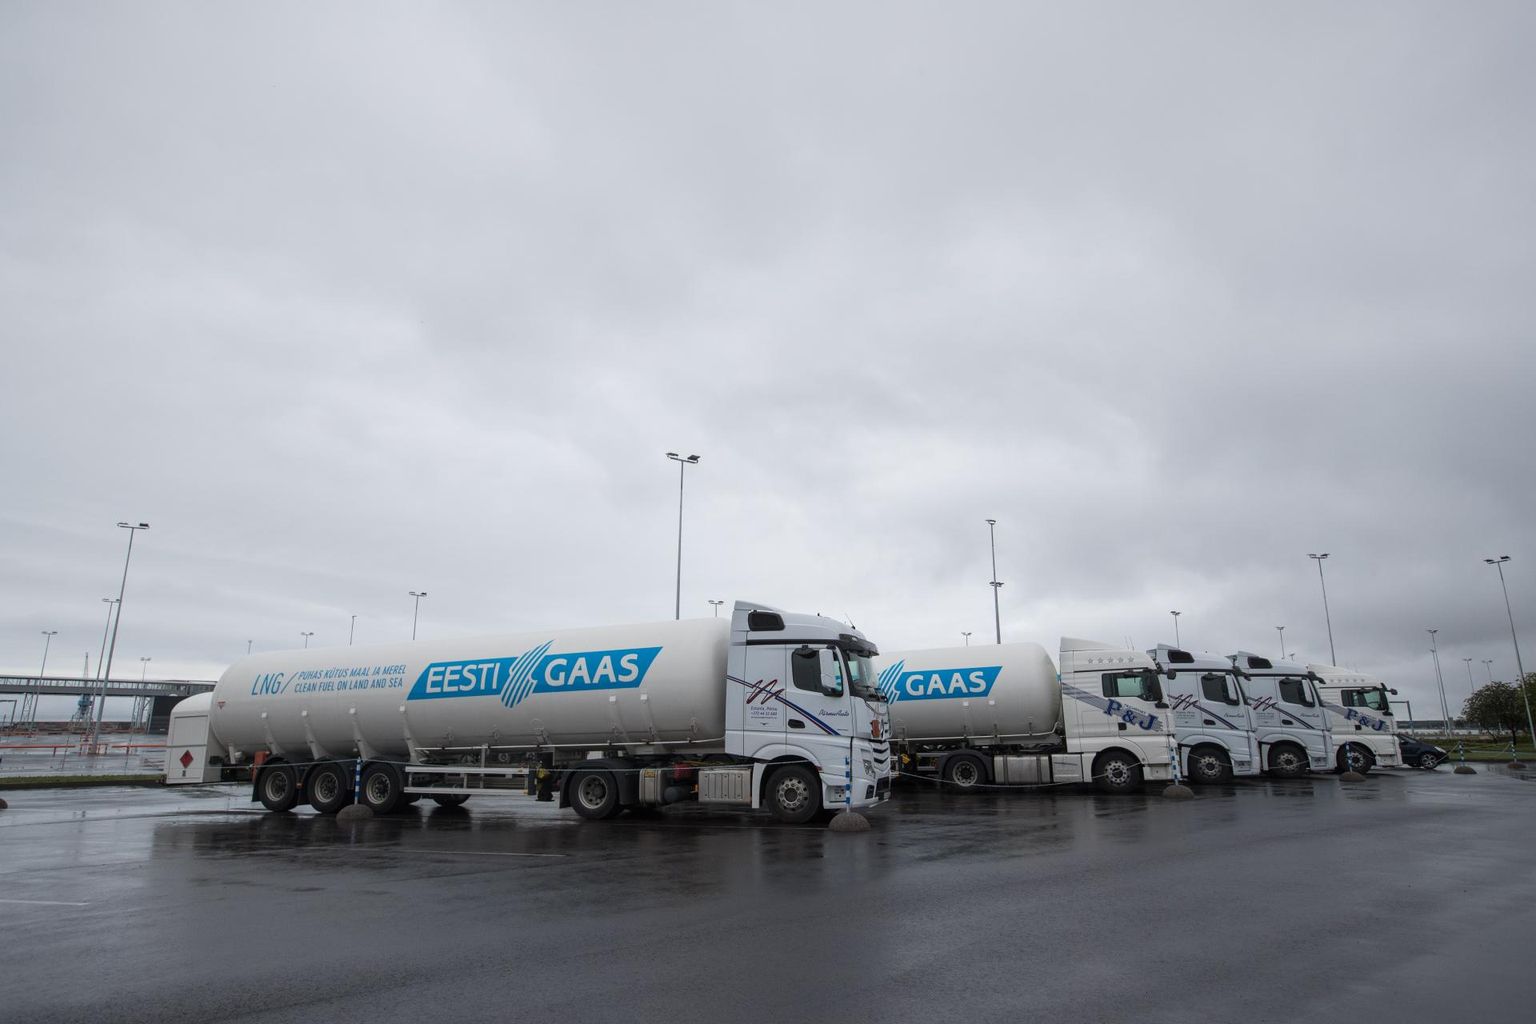 Eesti Gaasi LNG-autod ootavad Tallinna sadamas Megastari punkerdamist ja suunduvad seejärel Koidula piiripunkti, kus nad eelisjärjekorras üle piiri pääsevad.